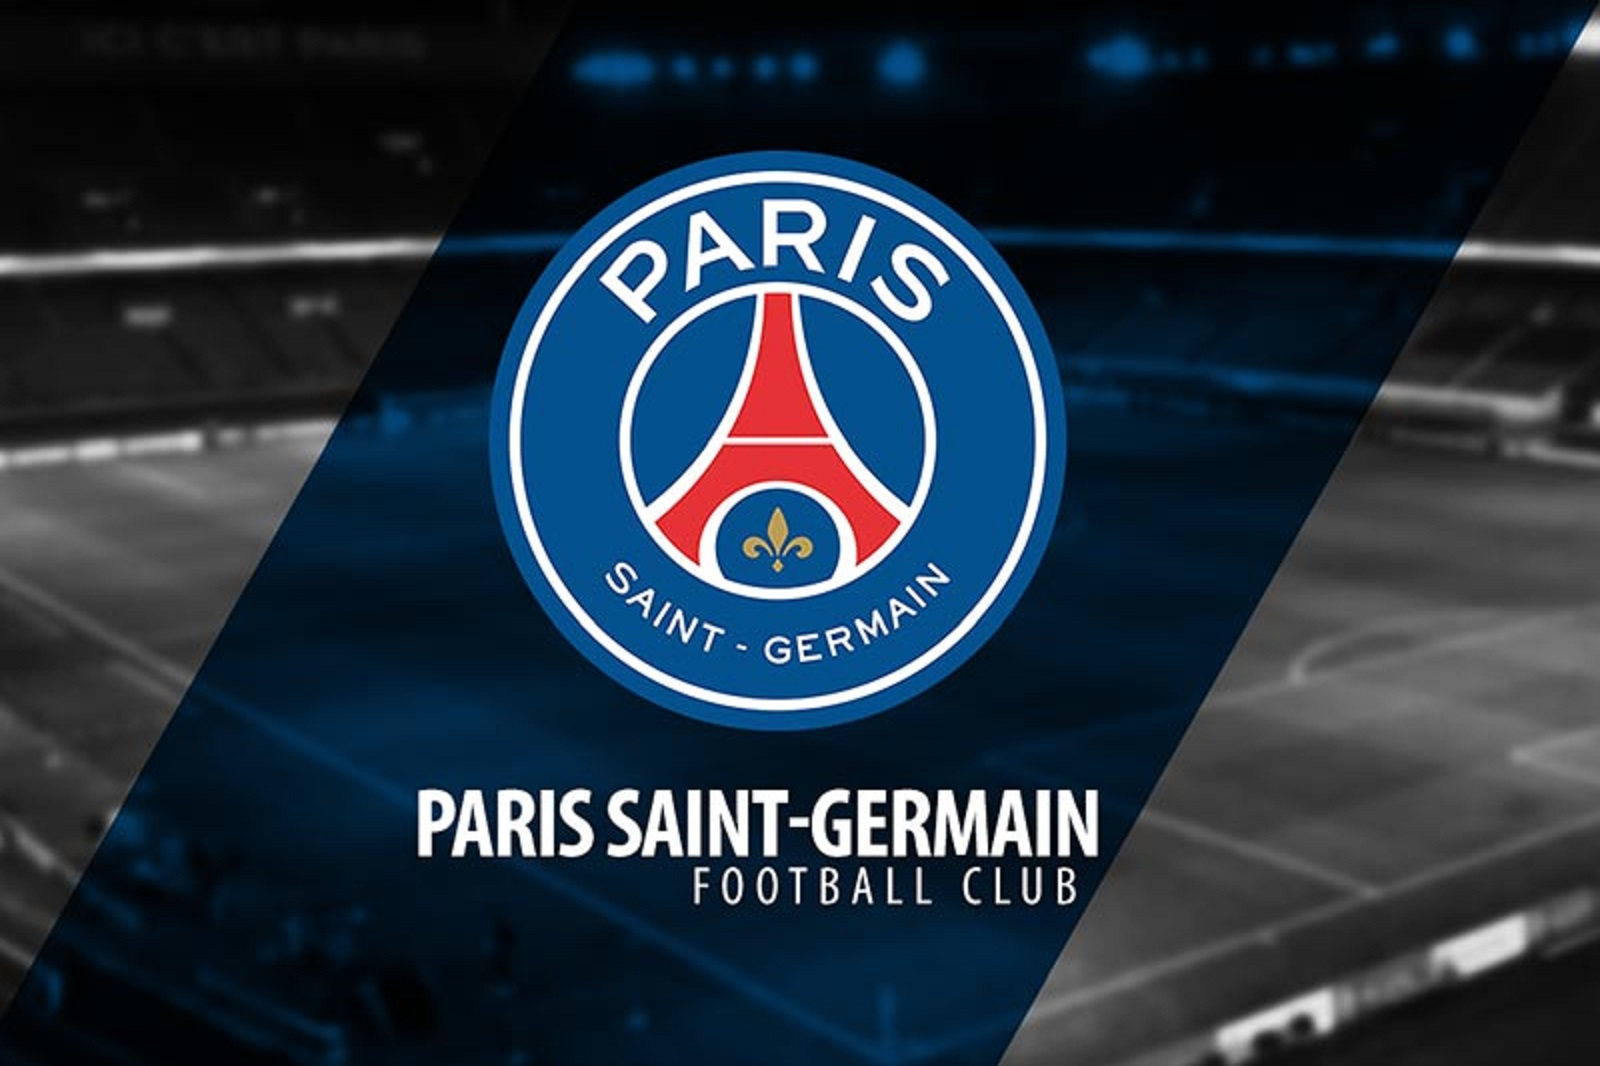  Giới thiệu chung về Paris Saint-Germain